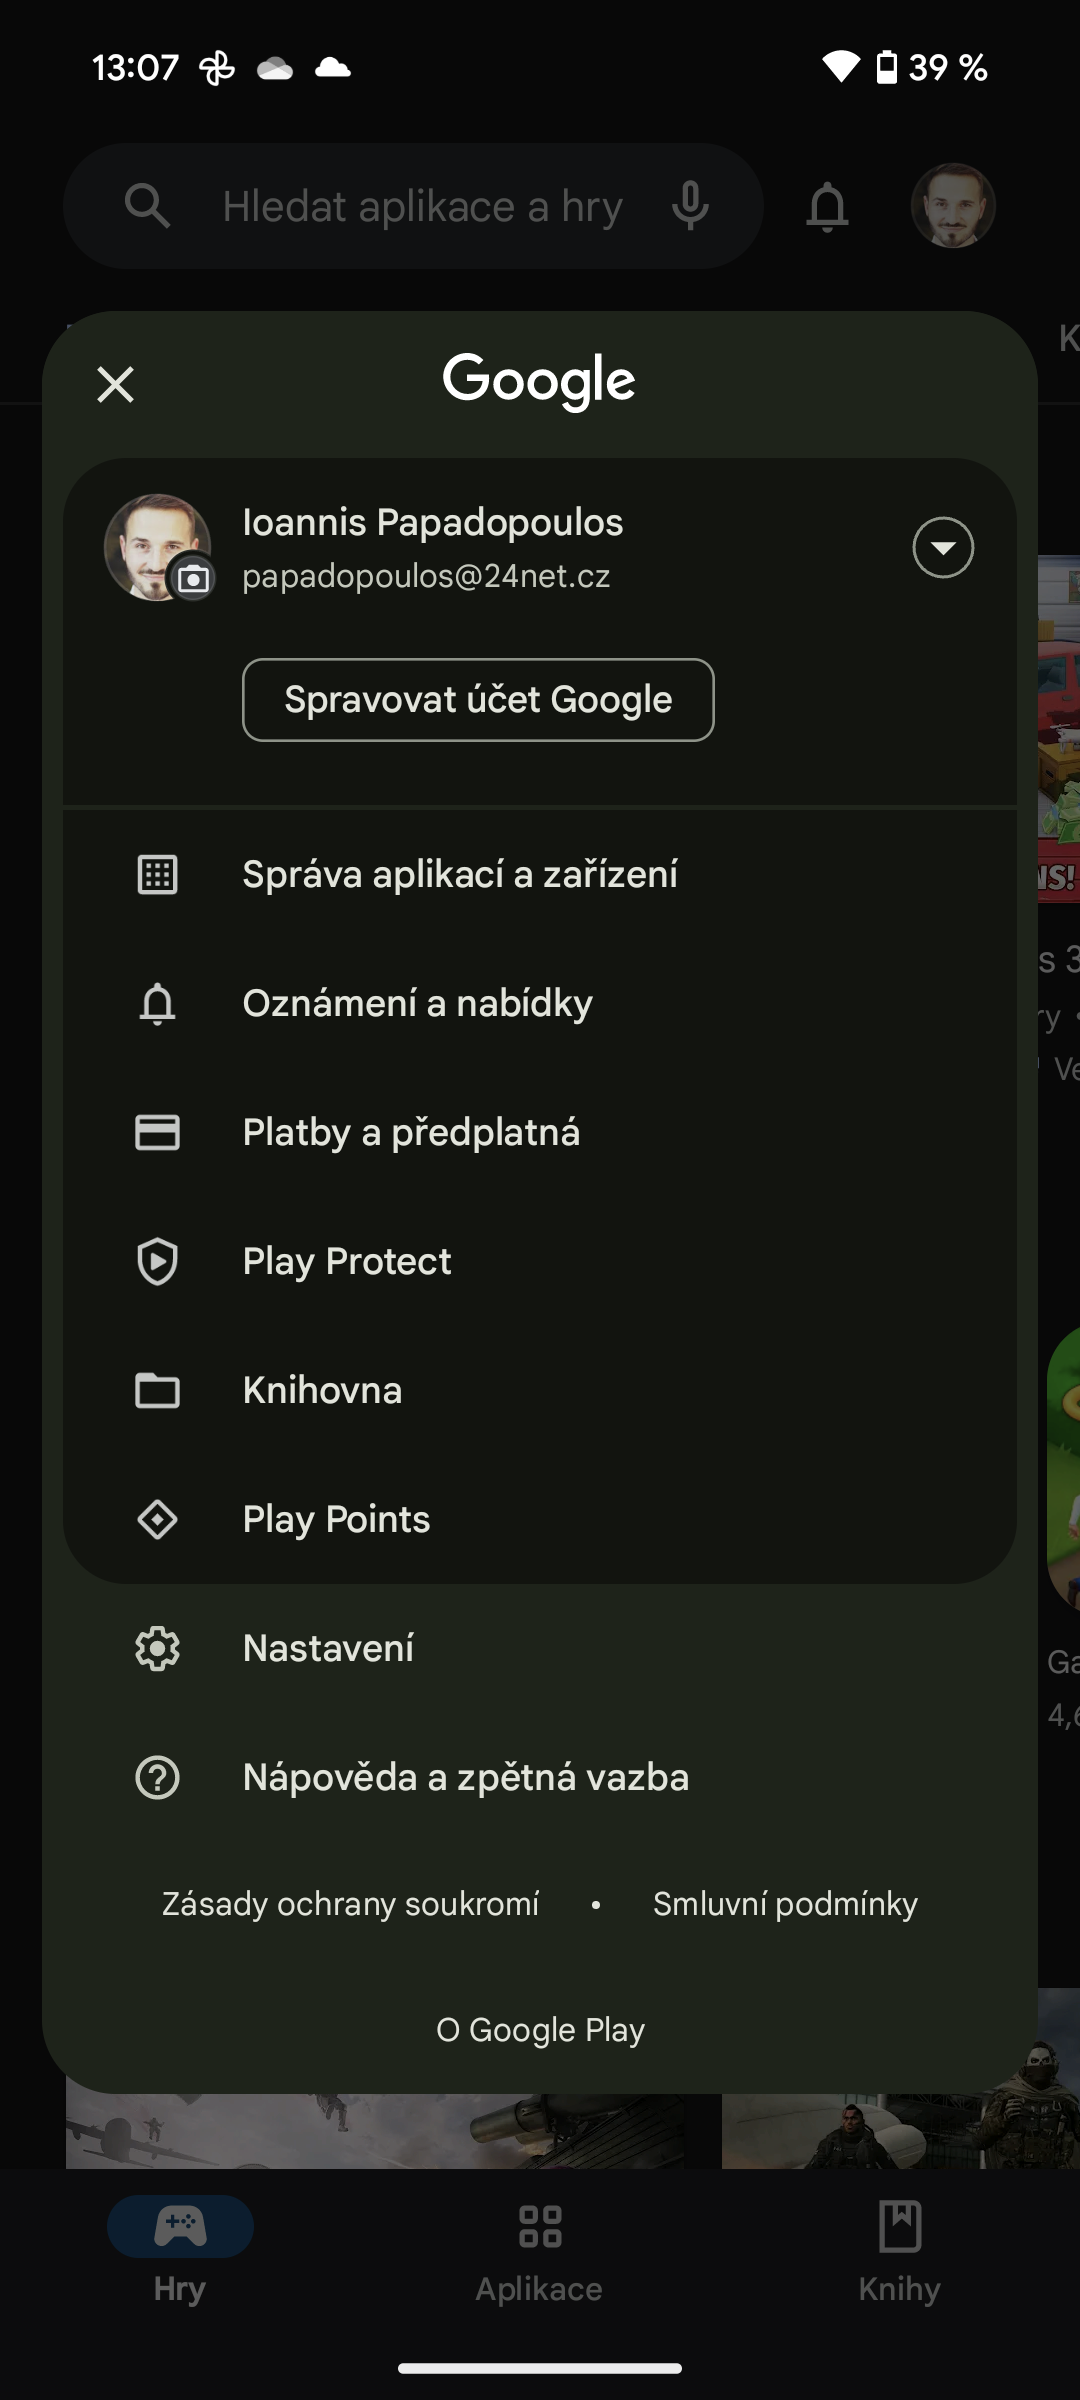 zrušení předplatného mobilenet.cz radí